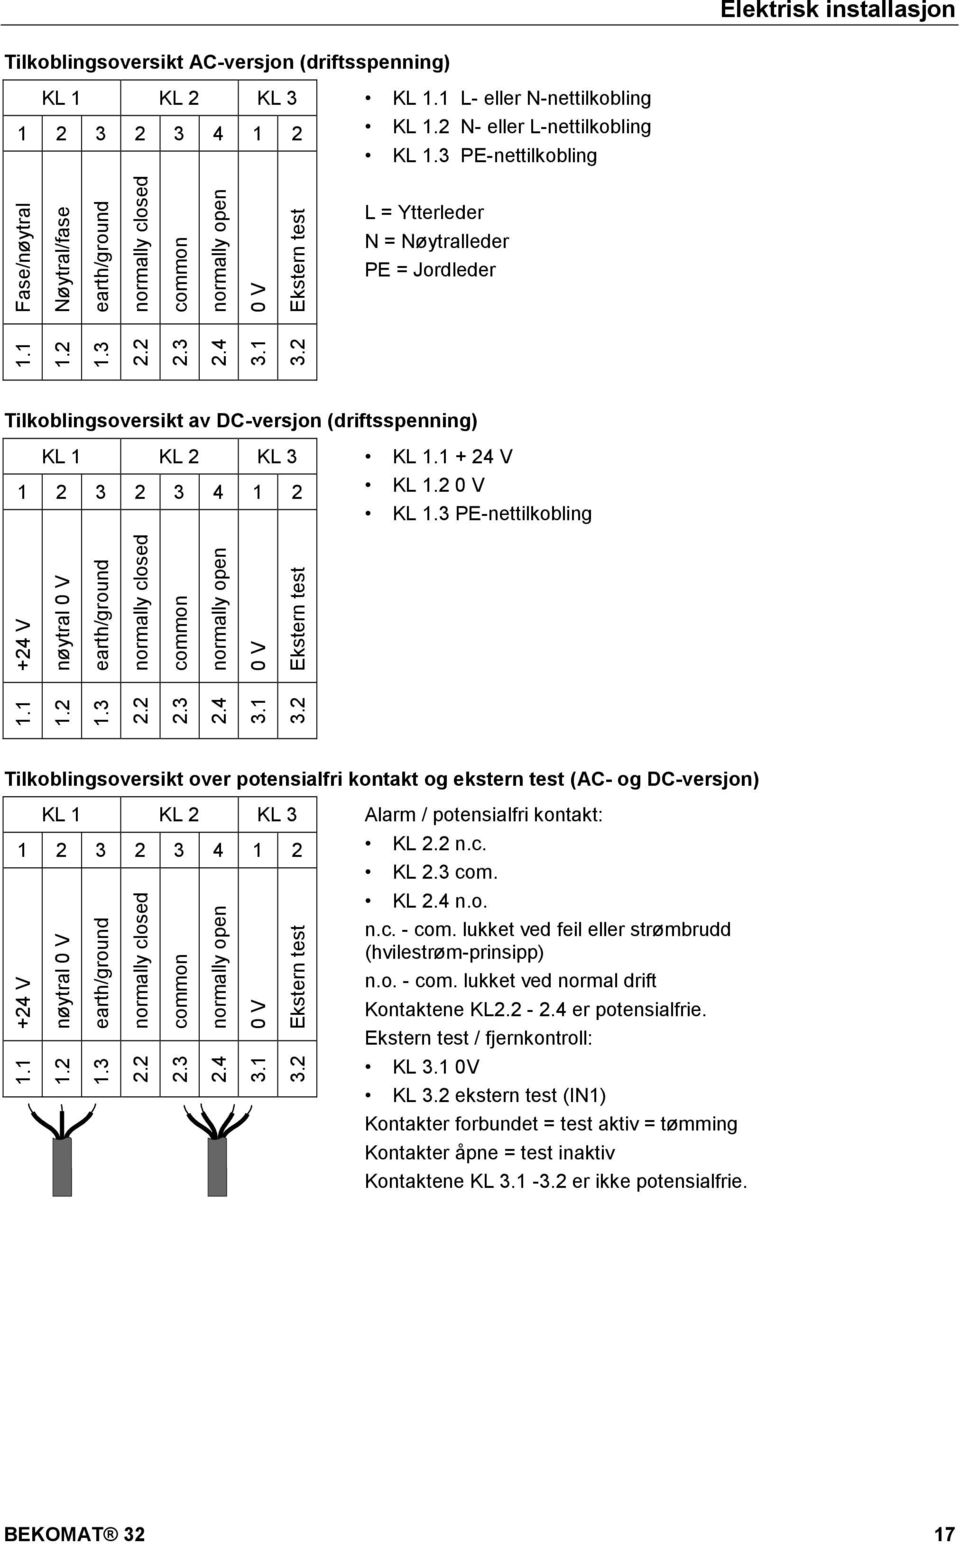 2 common normally open 0 V Ekstern test Tilkoblingsoversikt av DC-versjon (driftsspenning) KL 1 KL 2 KL 3 KL 1.1 + 24 V 1 2 3 2 3 4 1 2 KL 1.2 0 V KL 1.3 PE-nettilkobling 1.1 1.2 1.3 2.2 2.3 2.4 3.